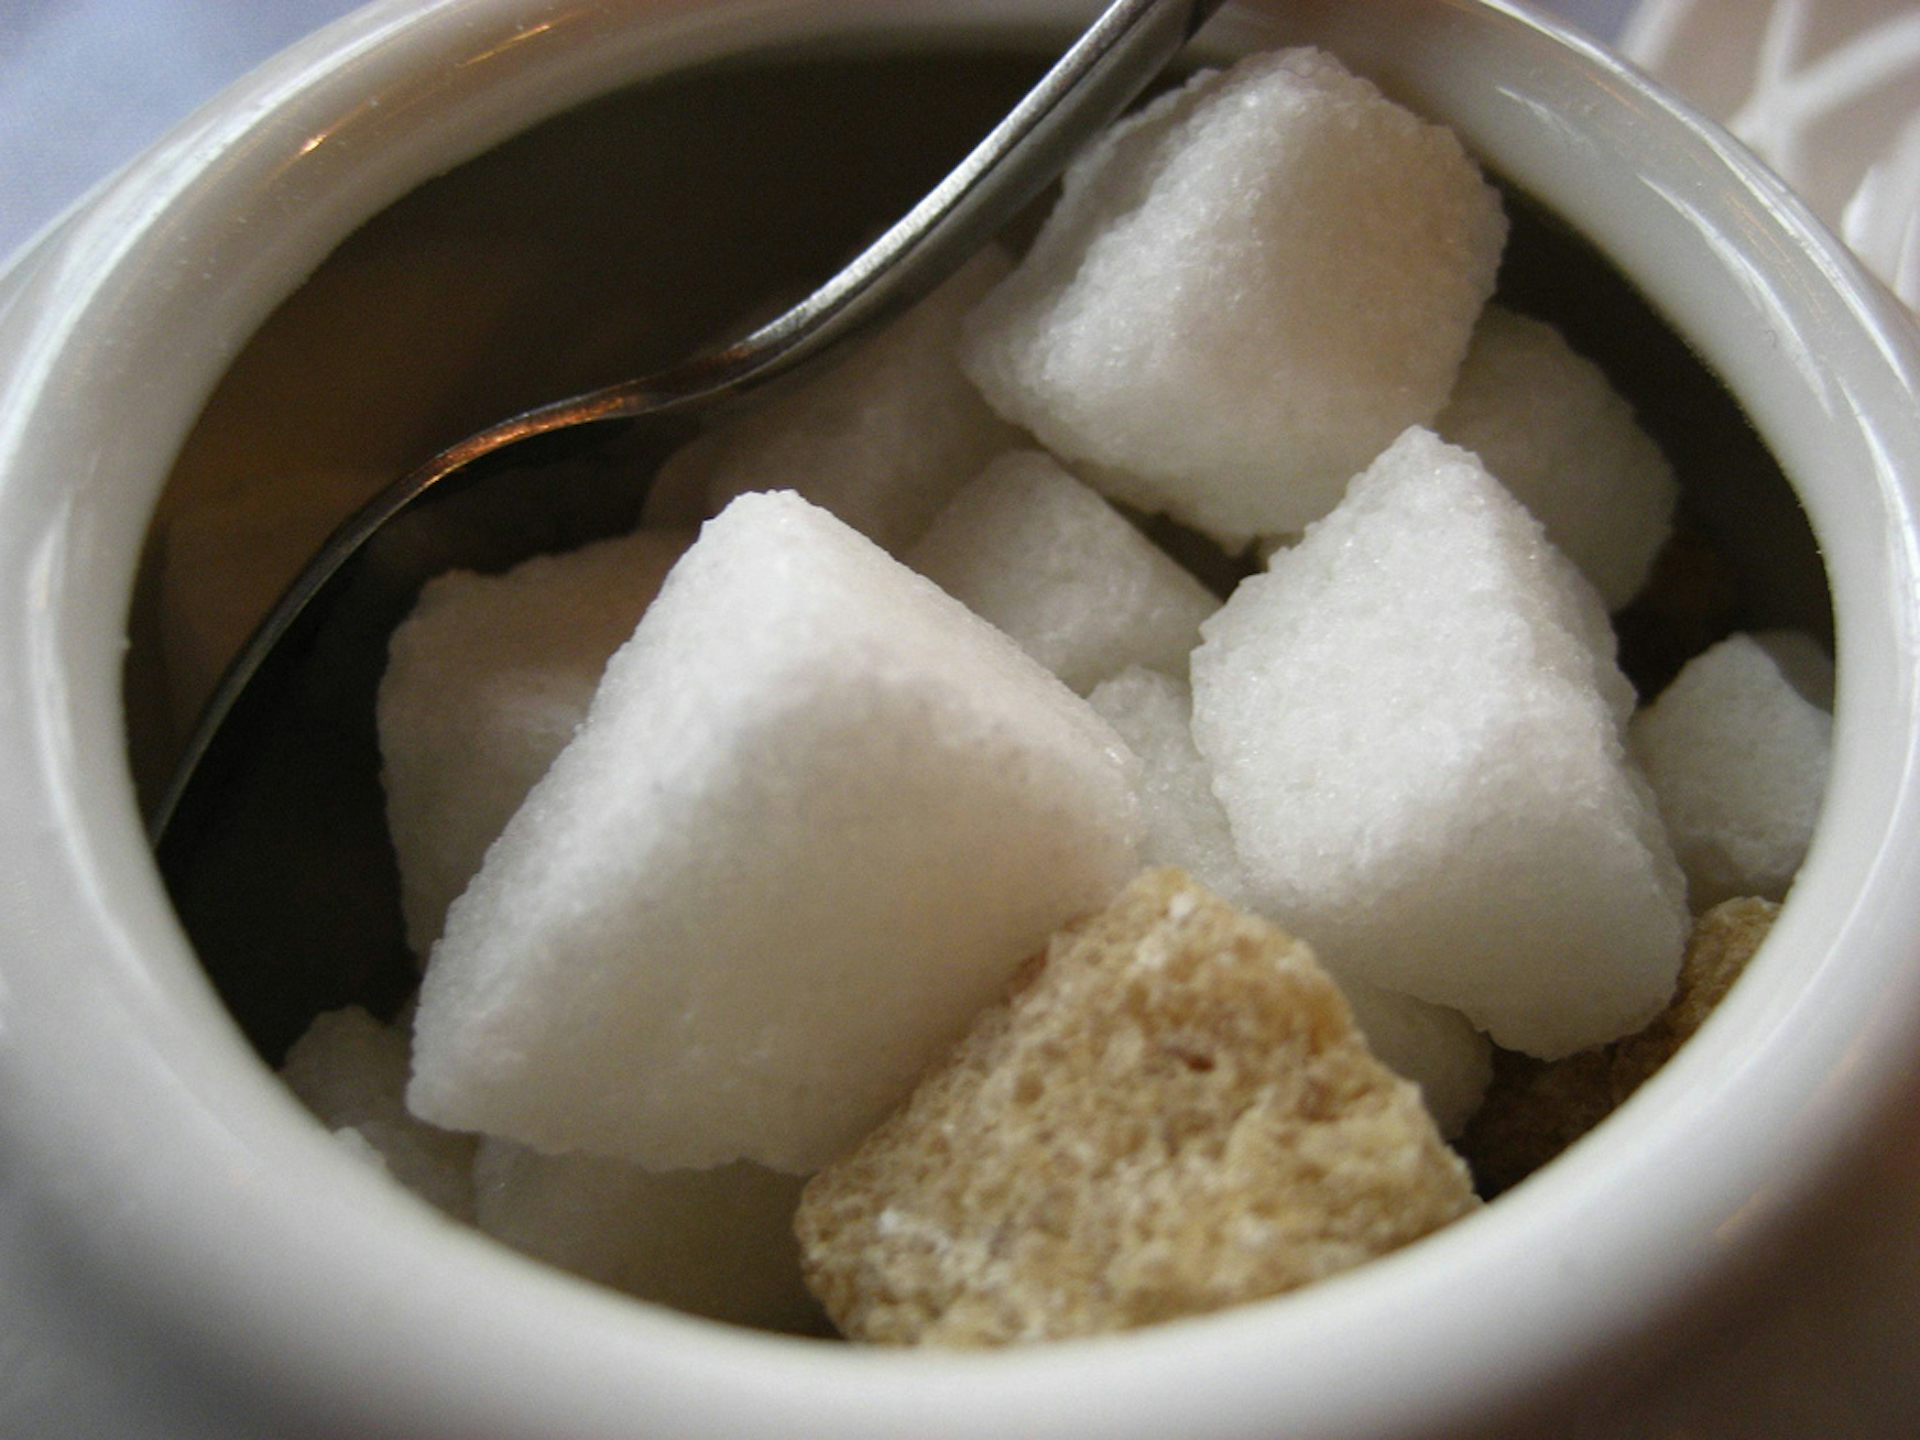 Сладость попки такая что можно в чай макать вместо сахара